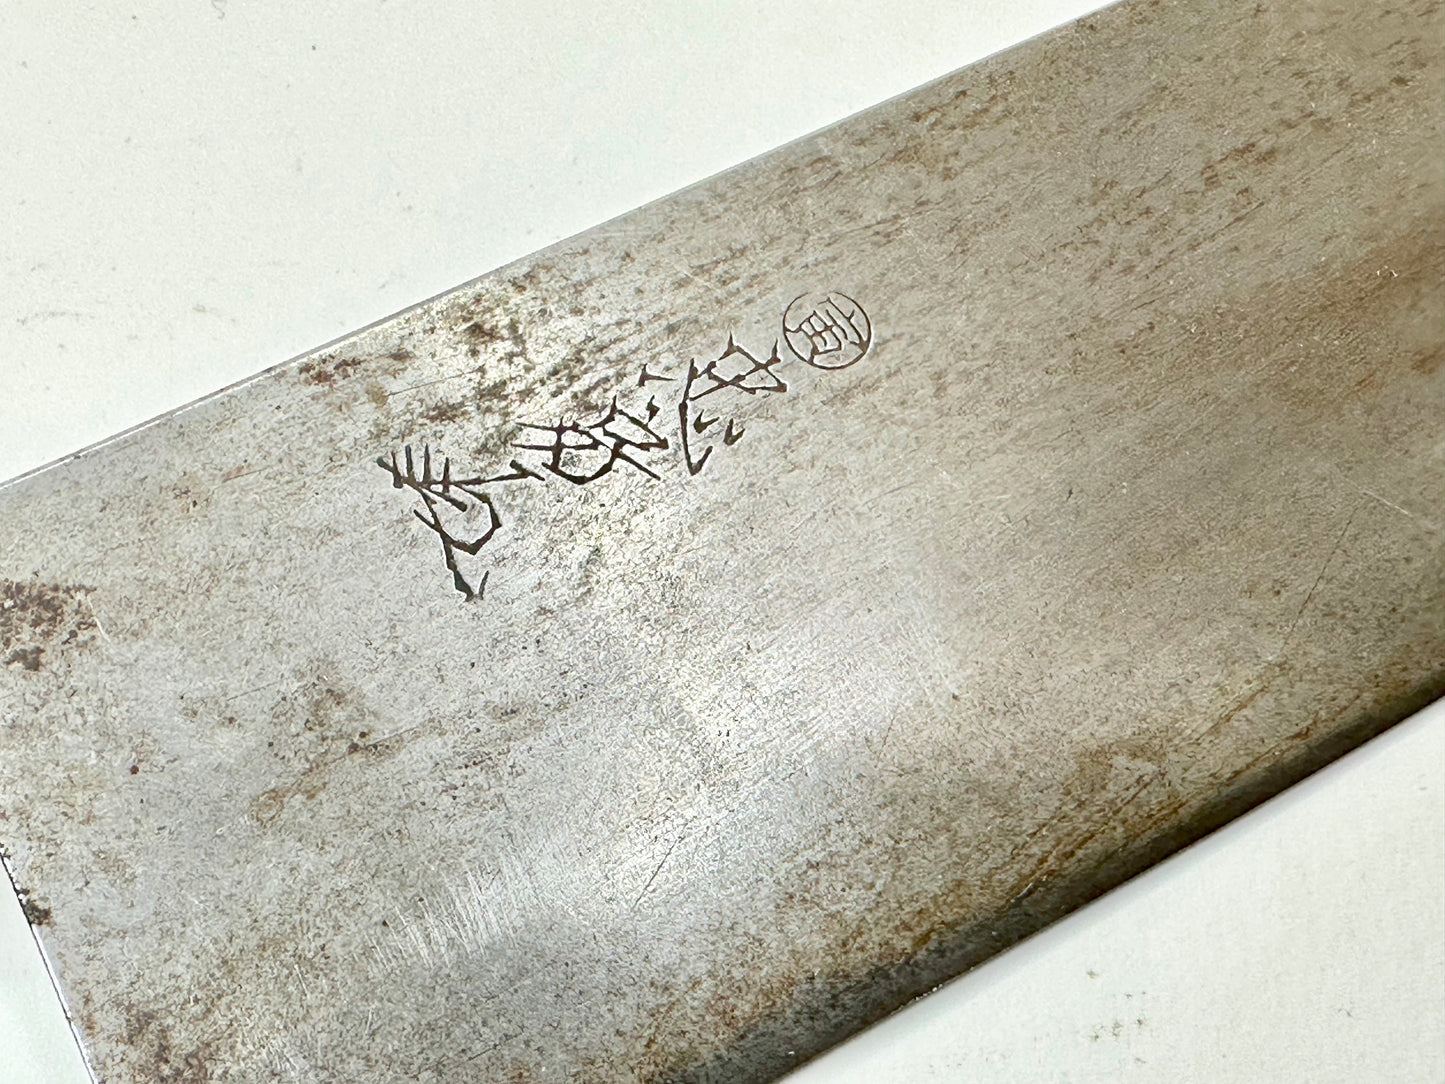 Vintage Japanese Signed Chef's Nakiri Hocho Sushi 6.5" Knife Laminated Samurai Steel